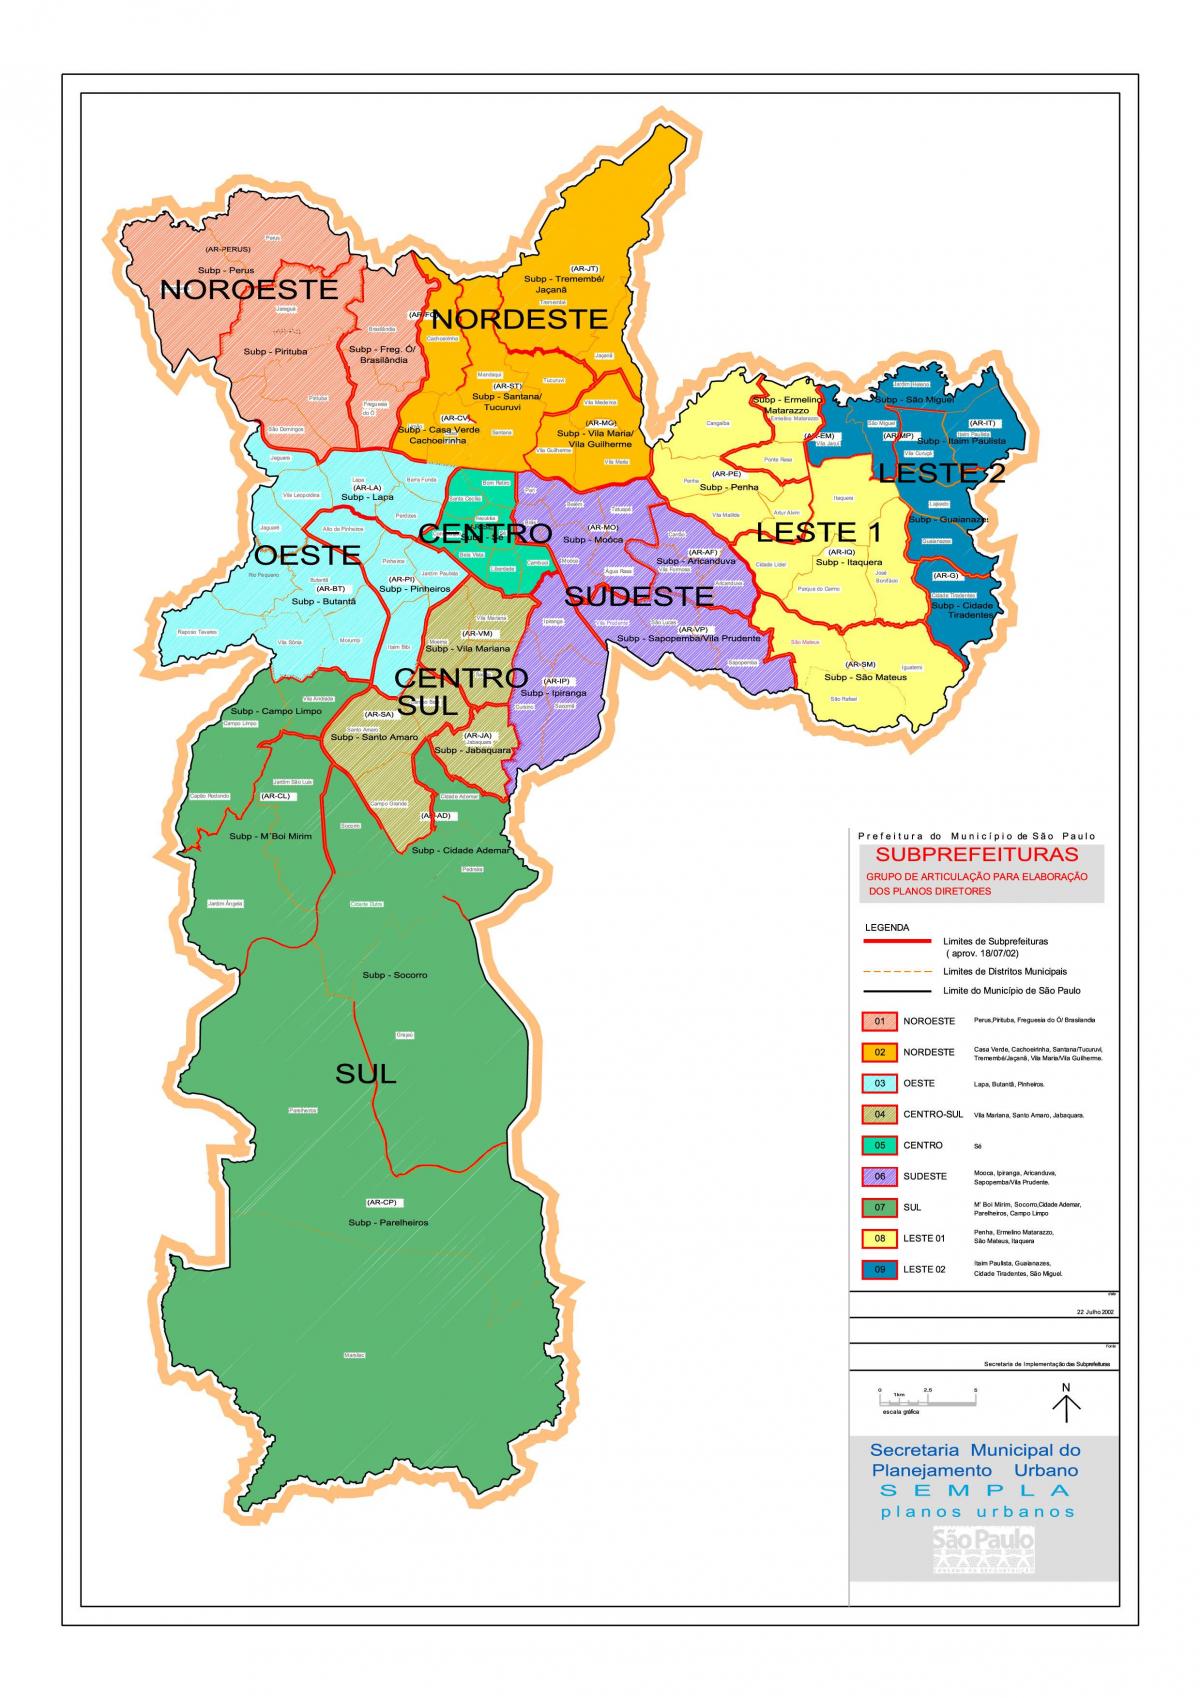 मानचित्र के क्षेत्रों में साओ पाउलो